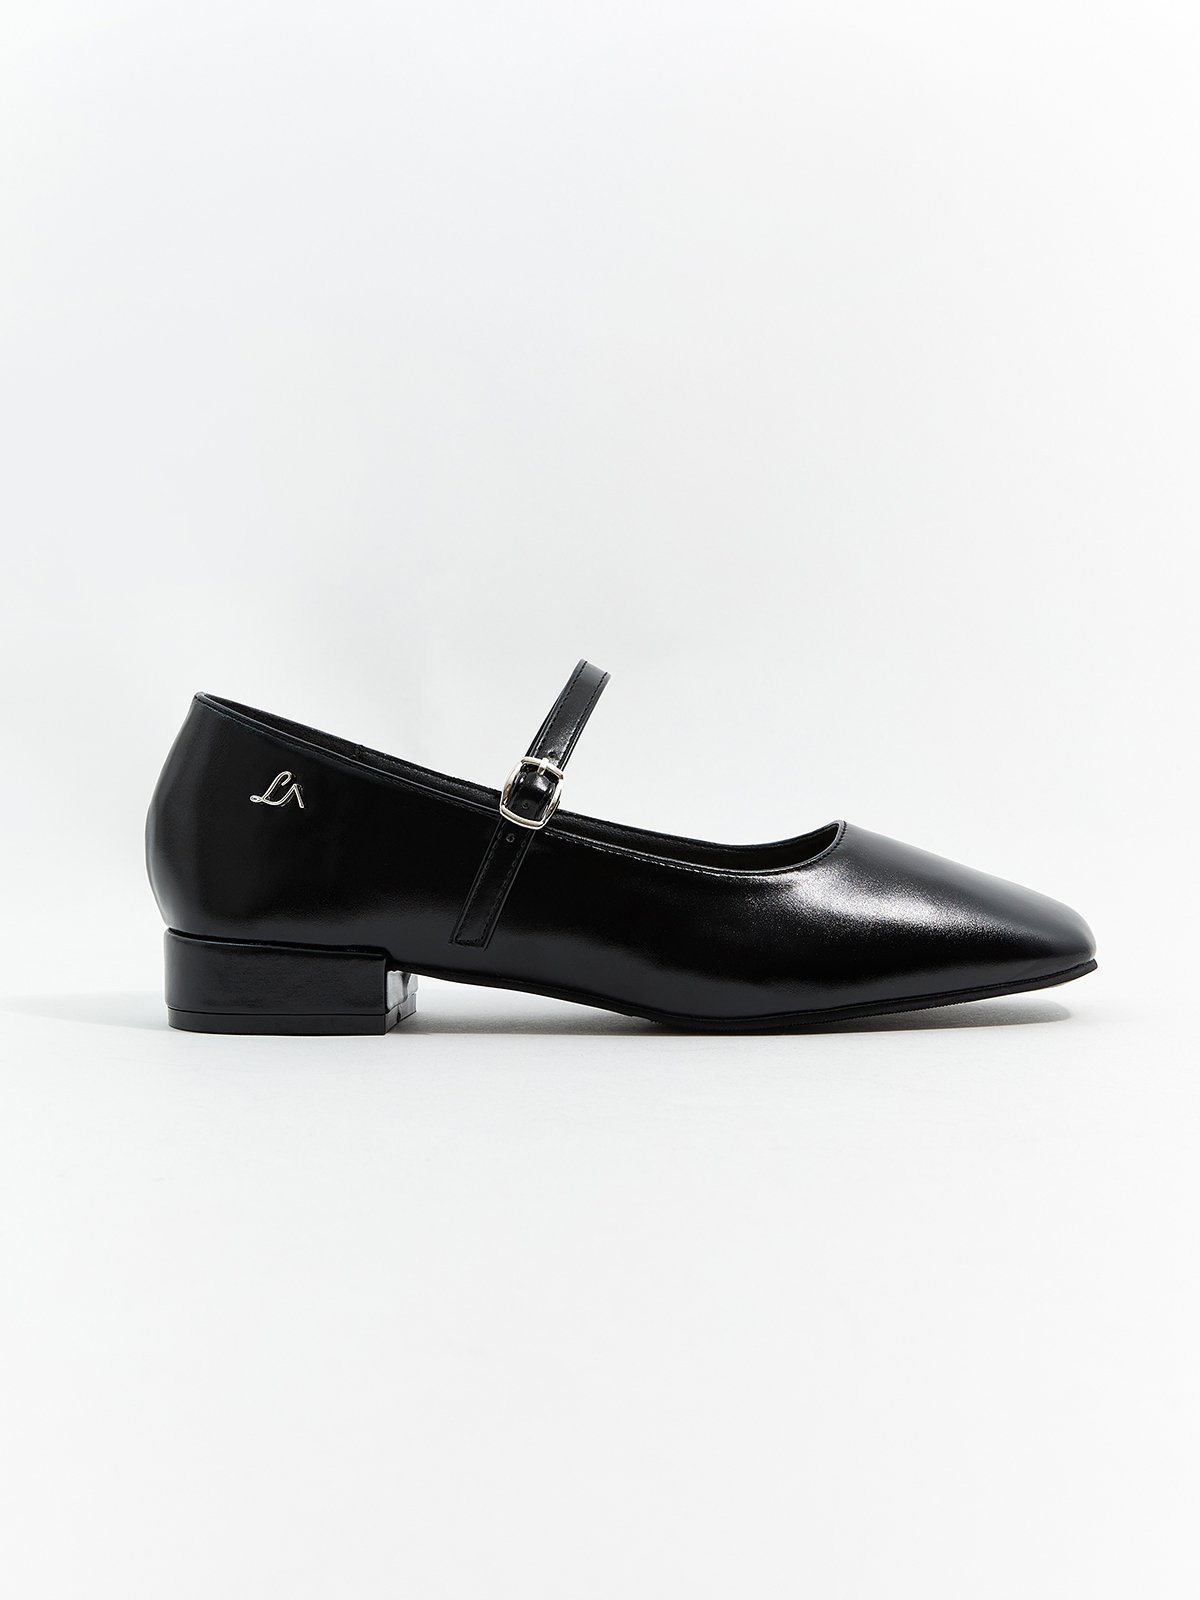 The Belle Shoes - Black - Pomelo Fashion